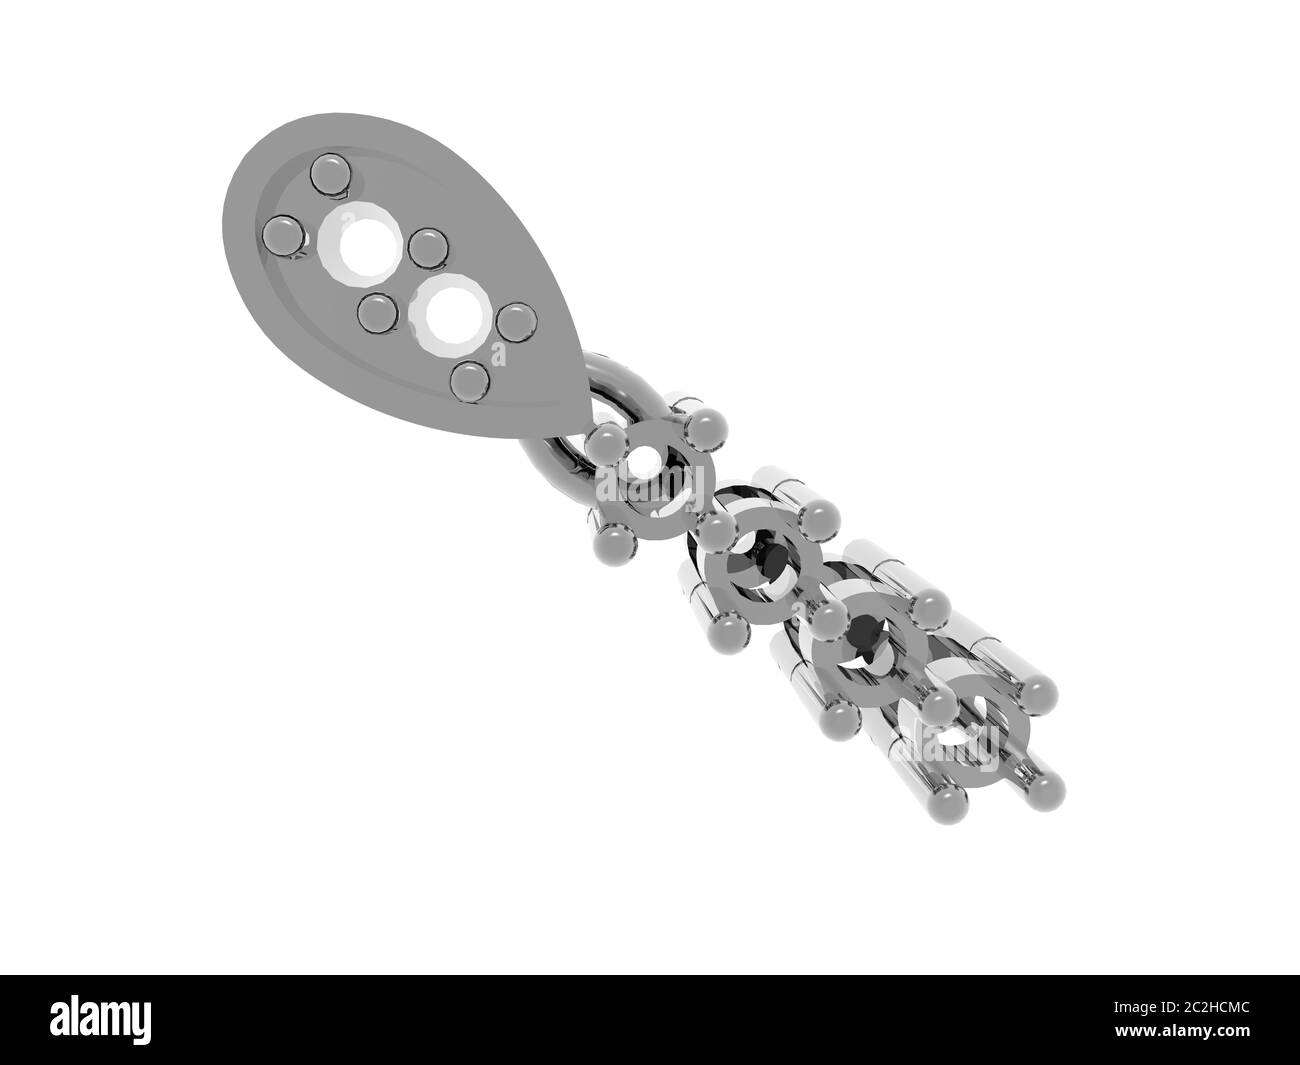 Silbrig glänzende Metallic-Engineering-Teile Stockfoto